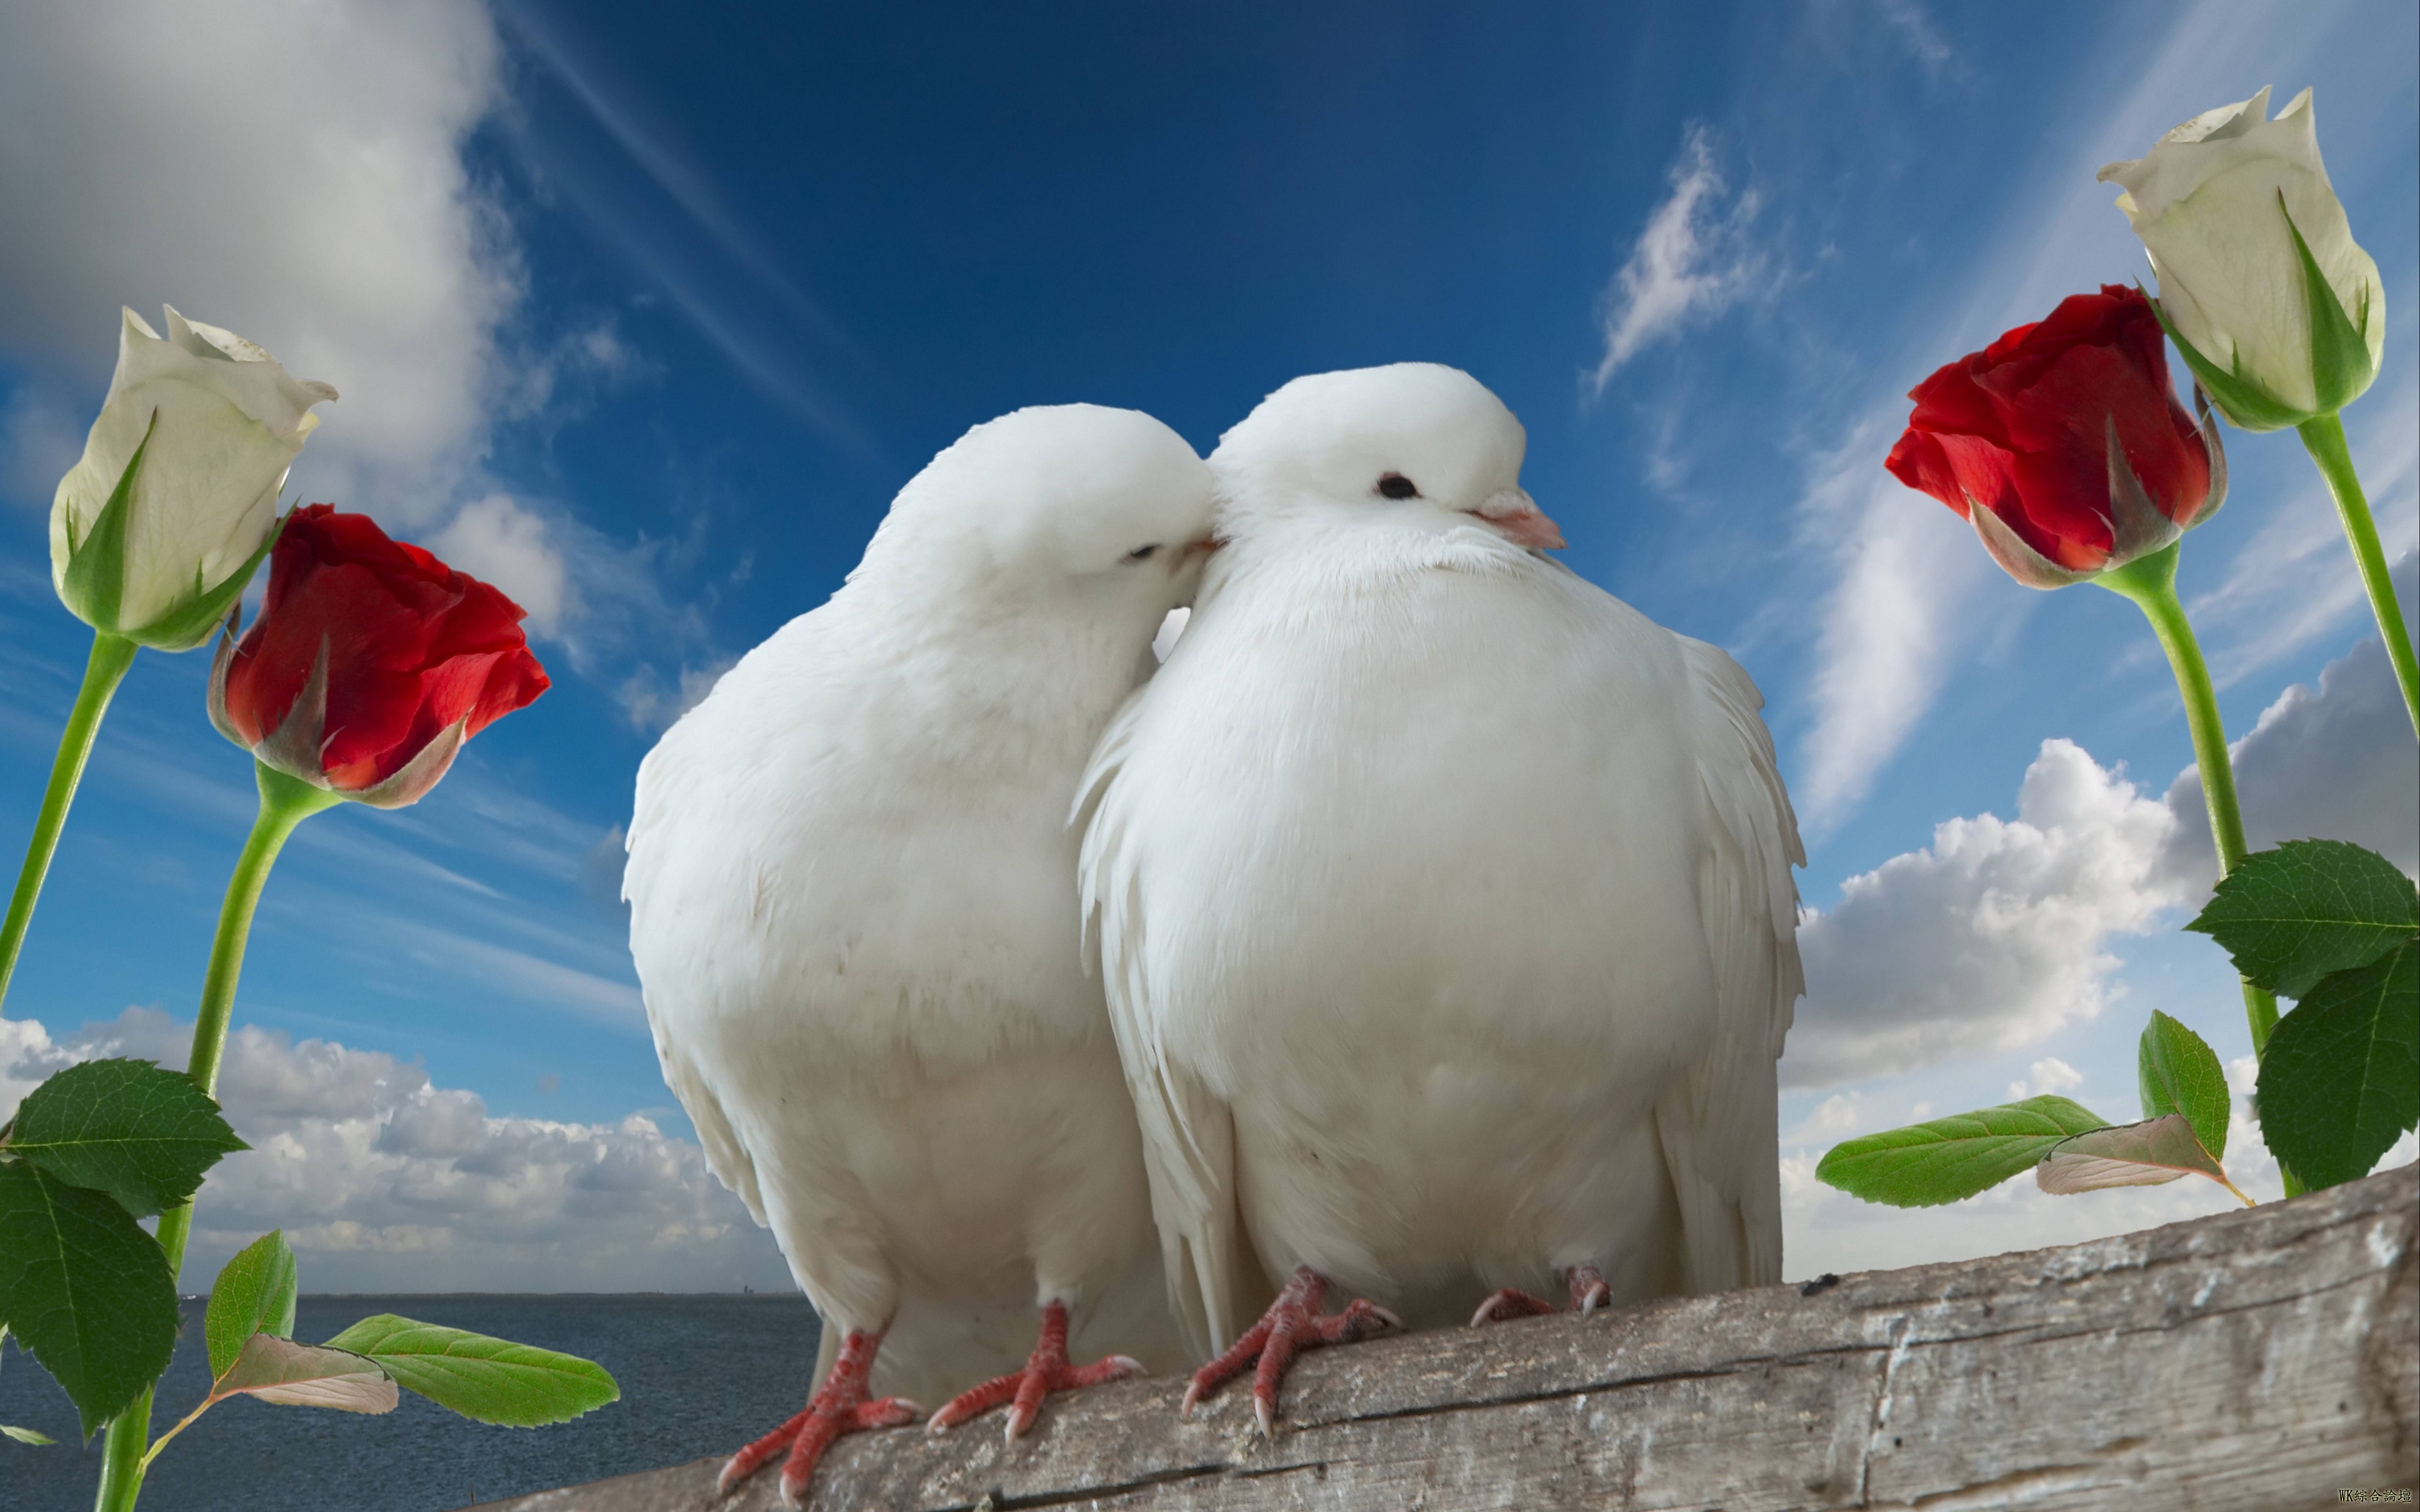 doves_couple_rose_sky_love_78149_3840x2400.jpg